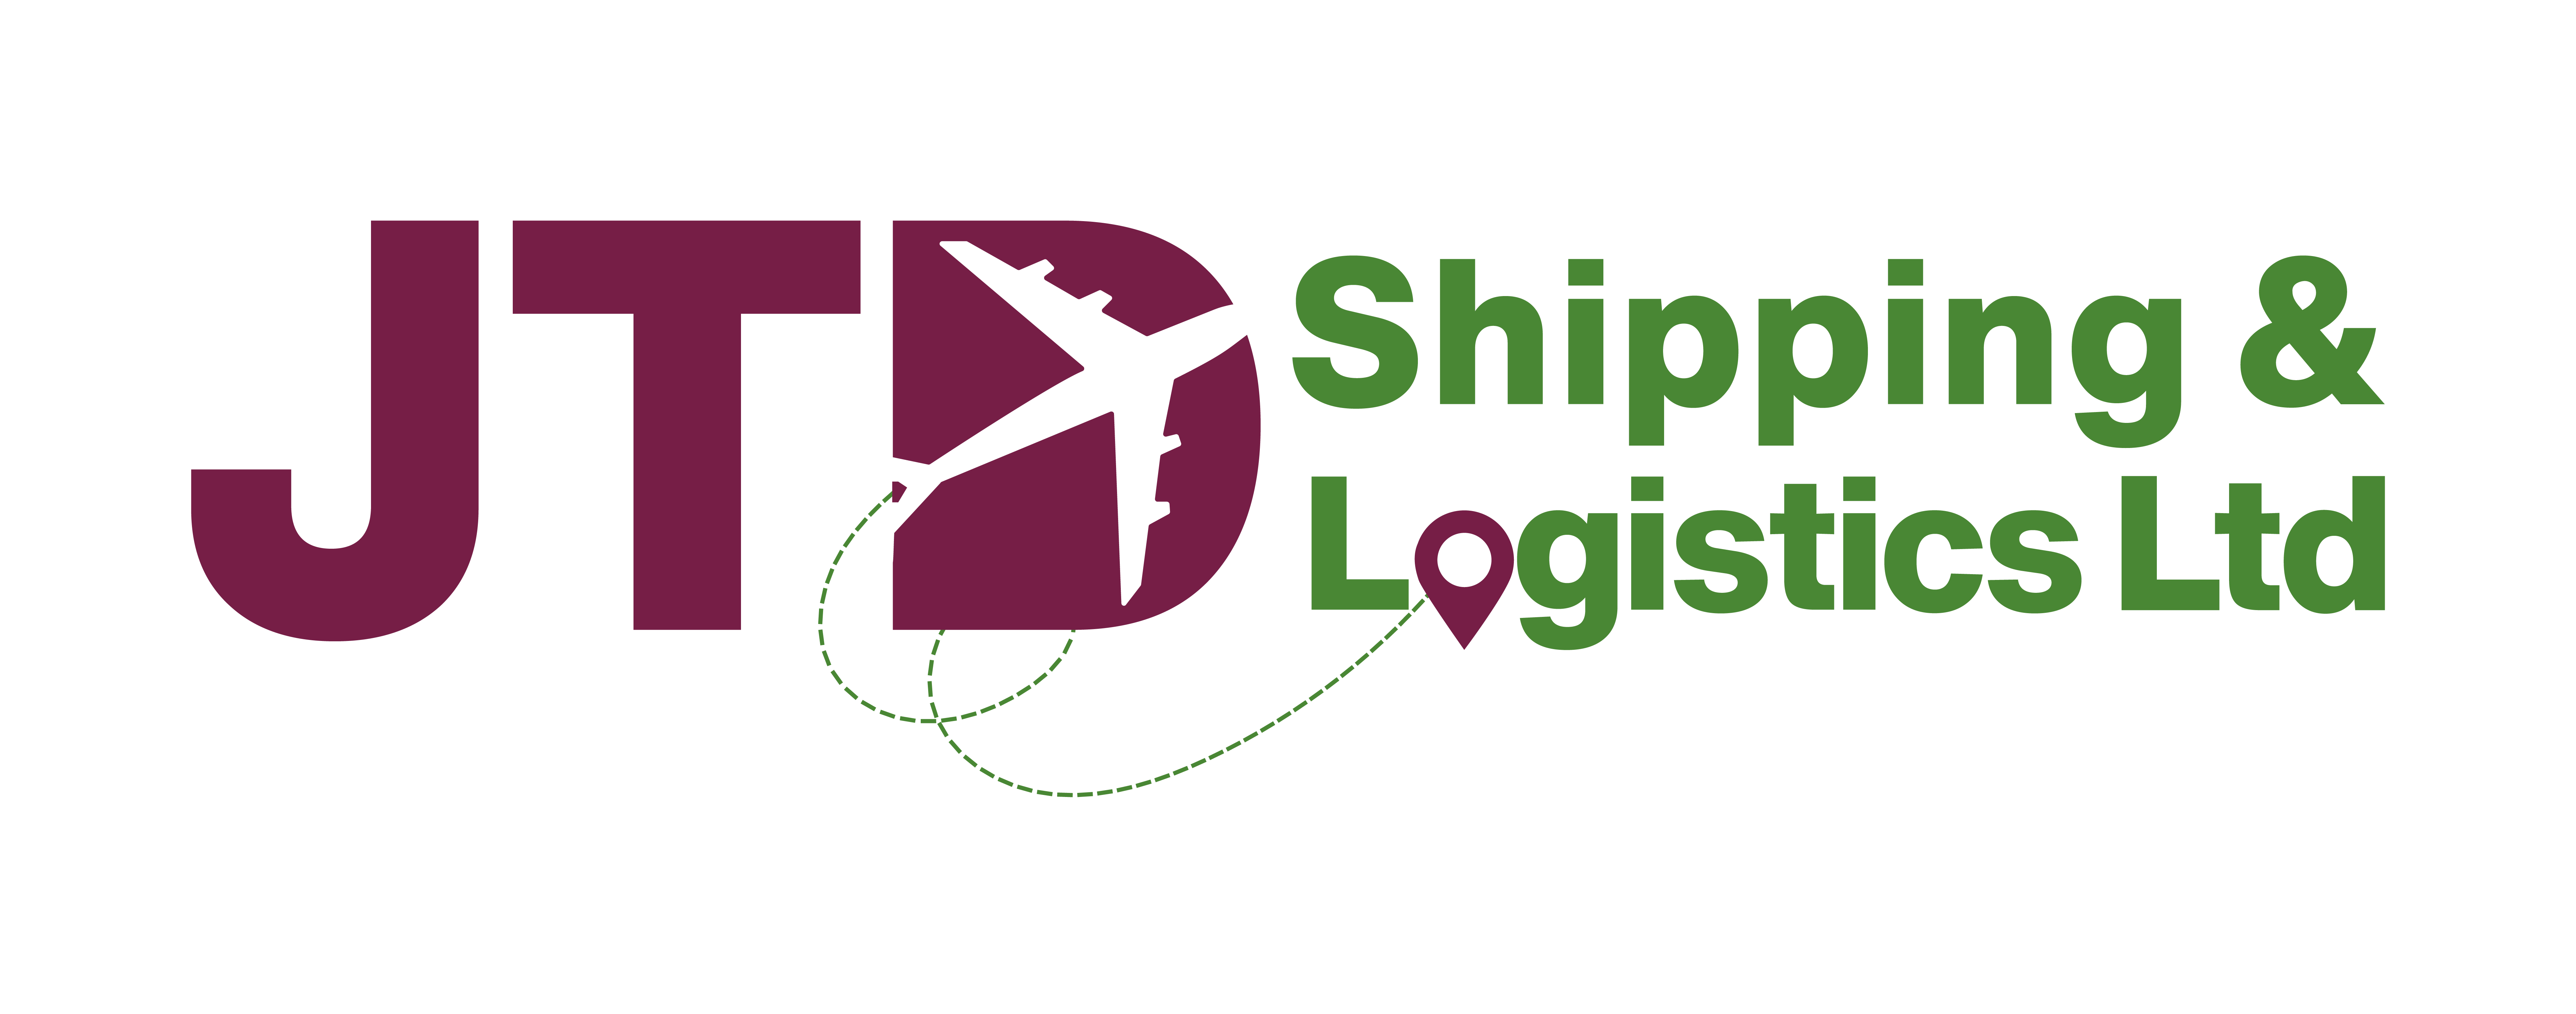 JTD Shipping & Logistics Ltd